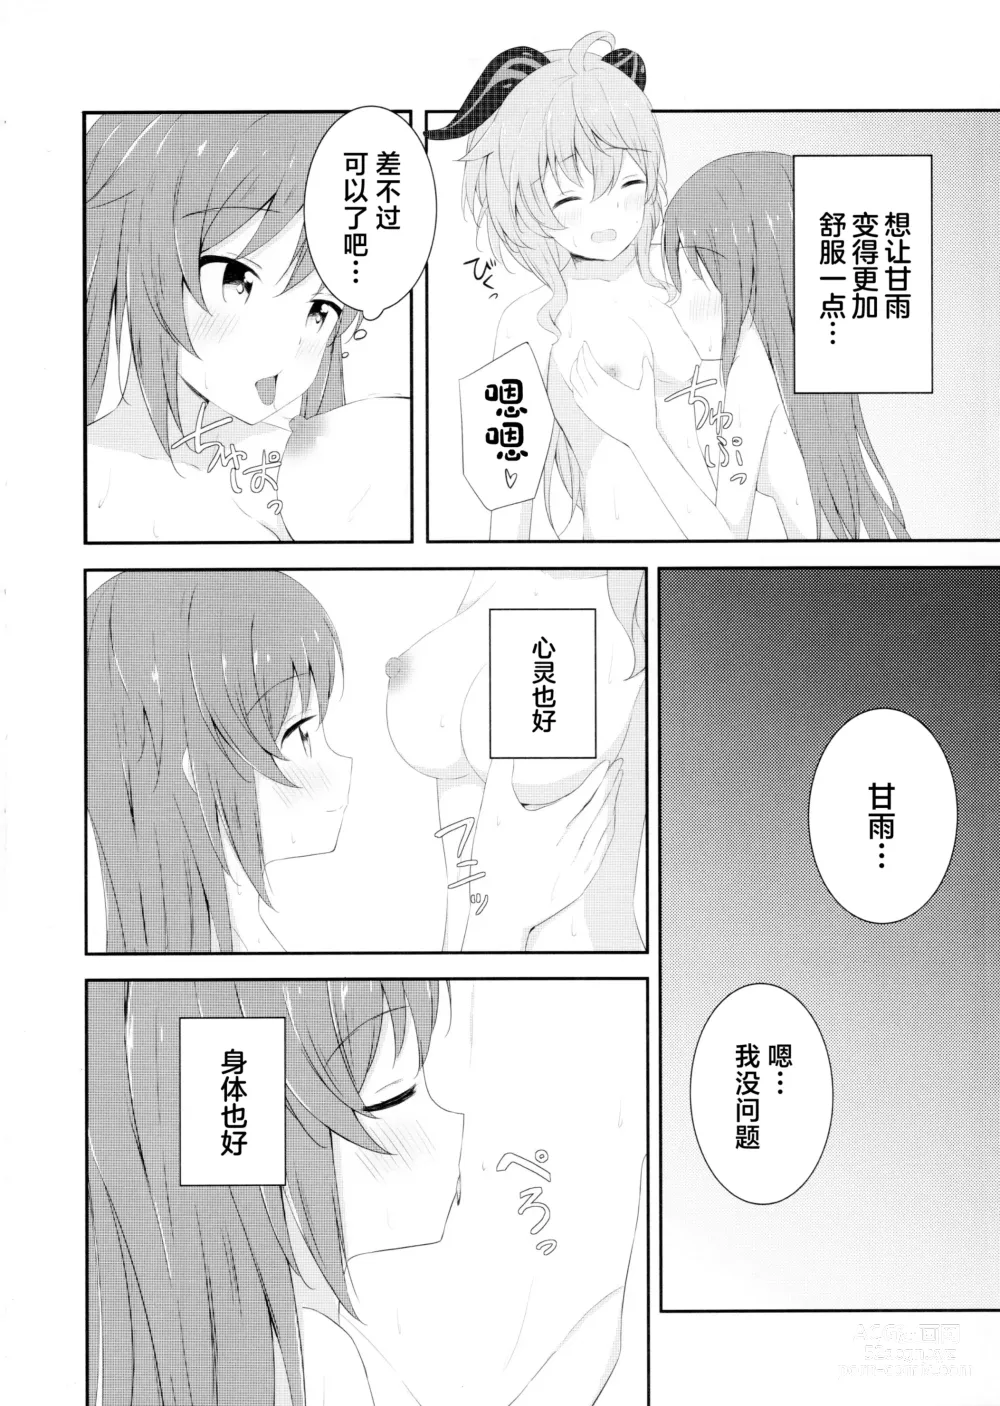 Page 9 of doujinshi KokuKan wa Echi ga Shitai!